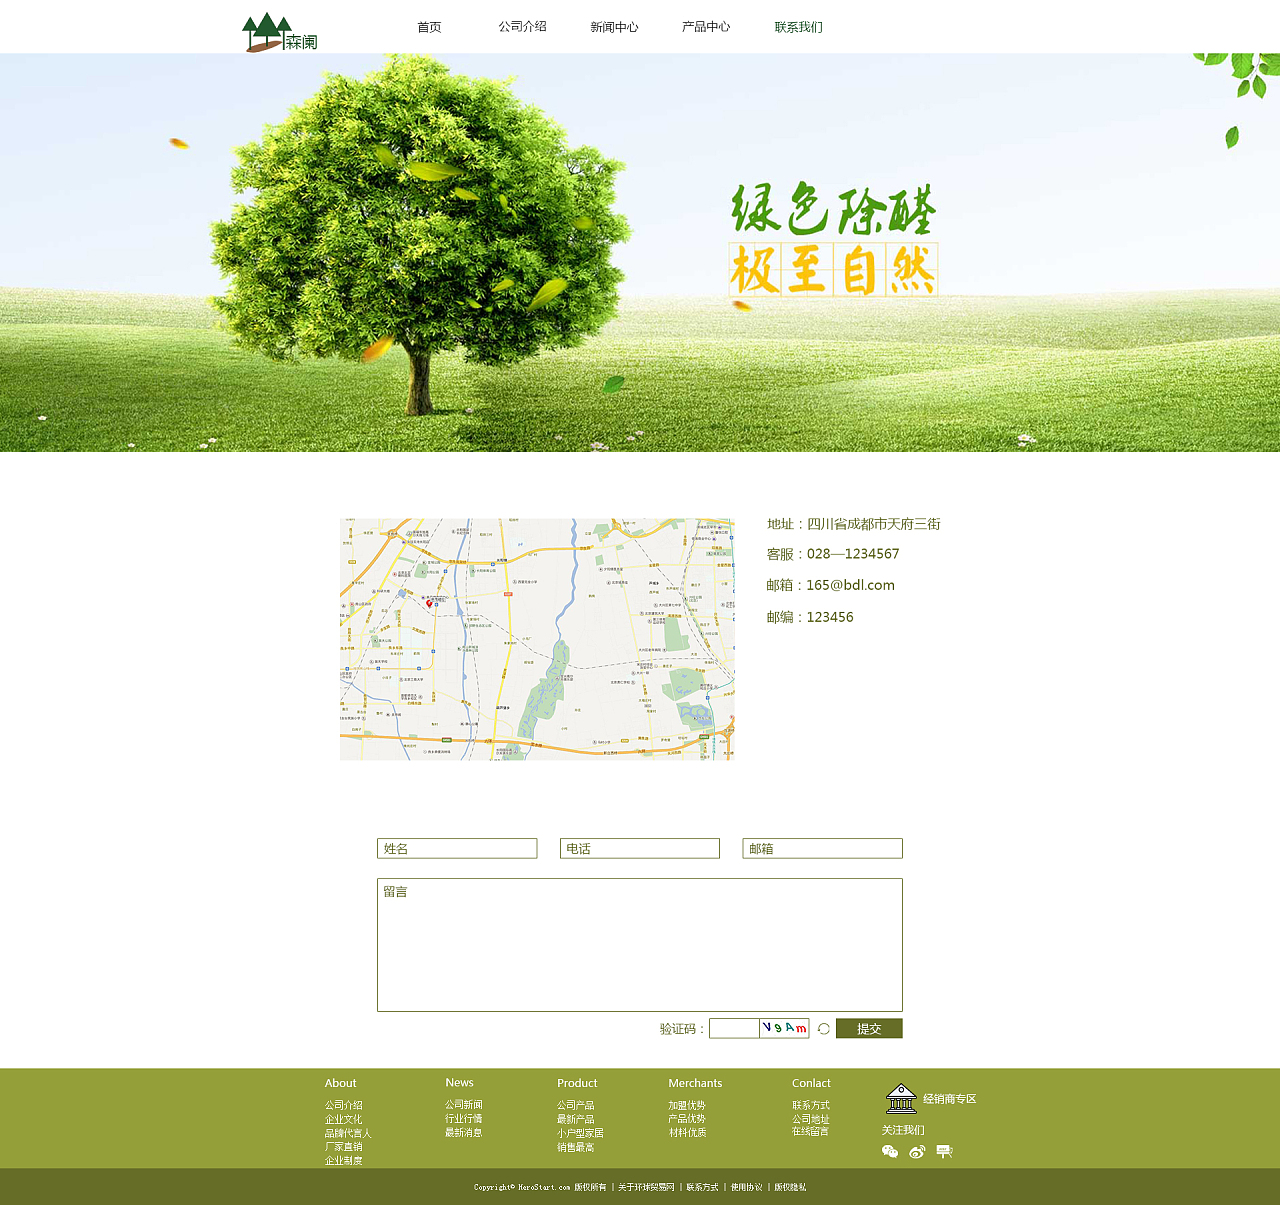 森阑家居用品企业网站设计